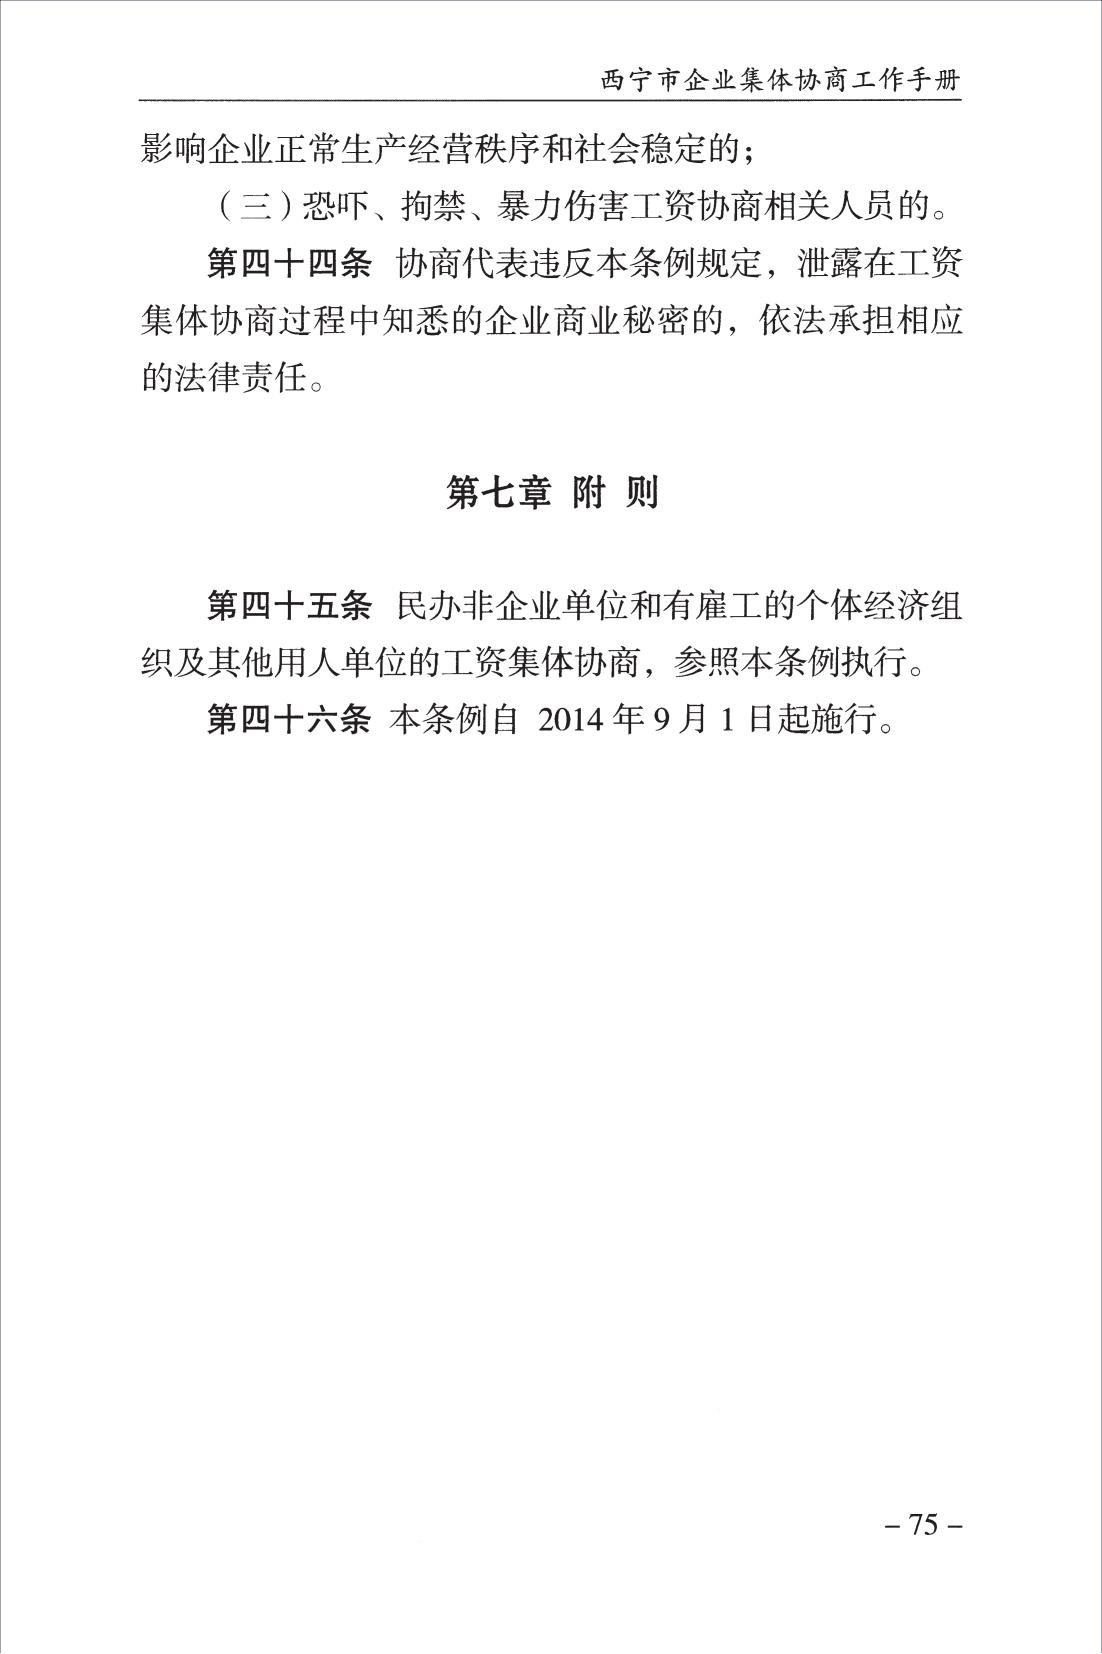 西宁市企业集体协商工作手册_77.jpg